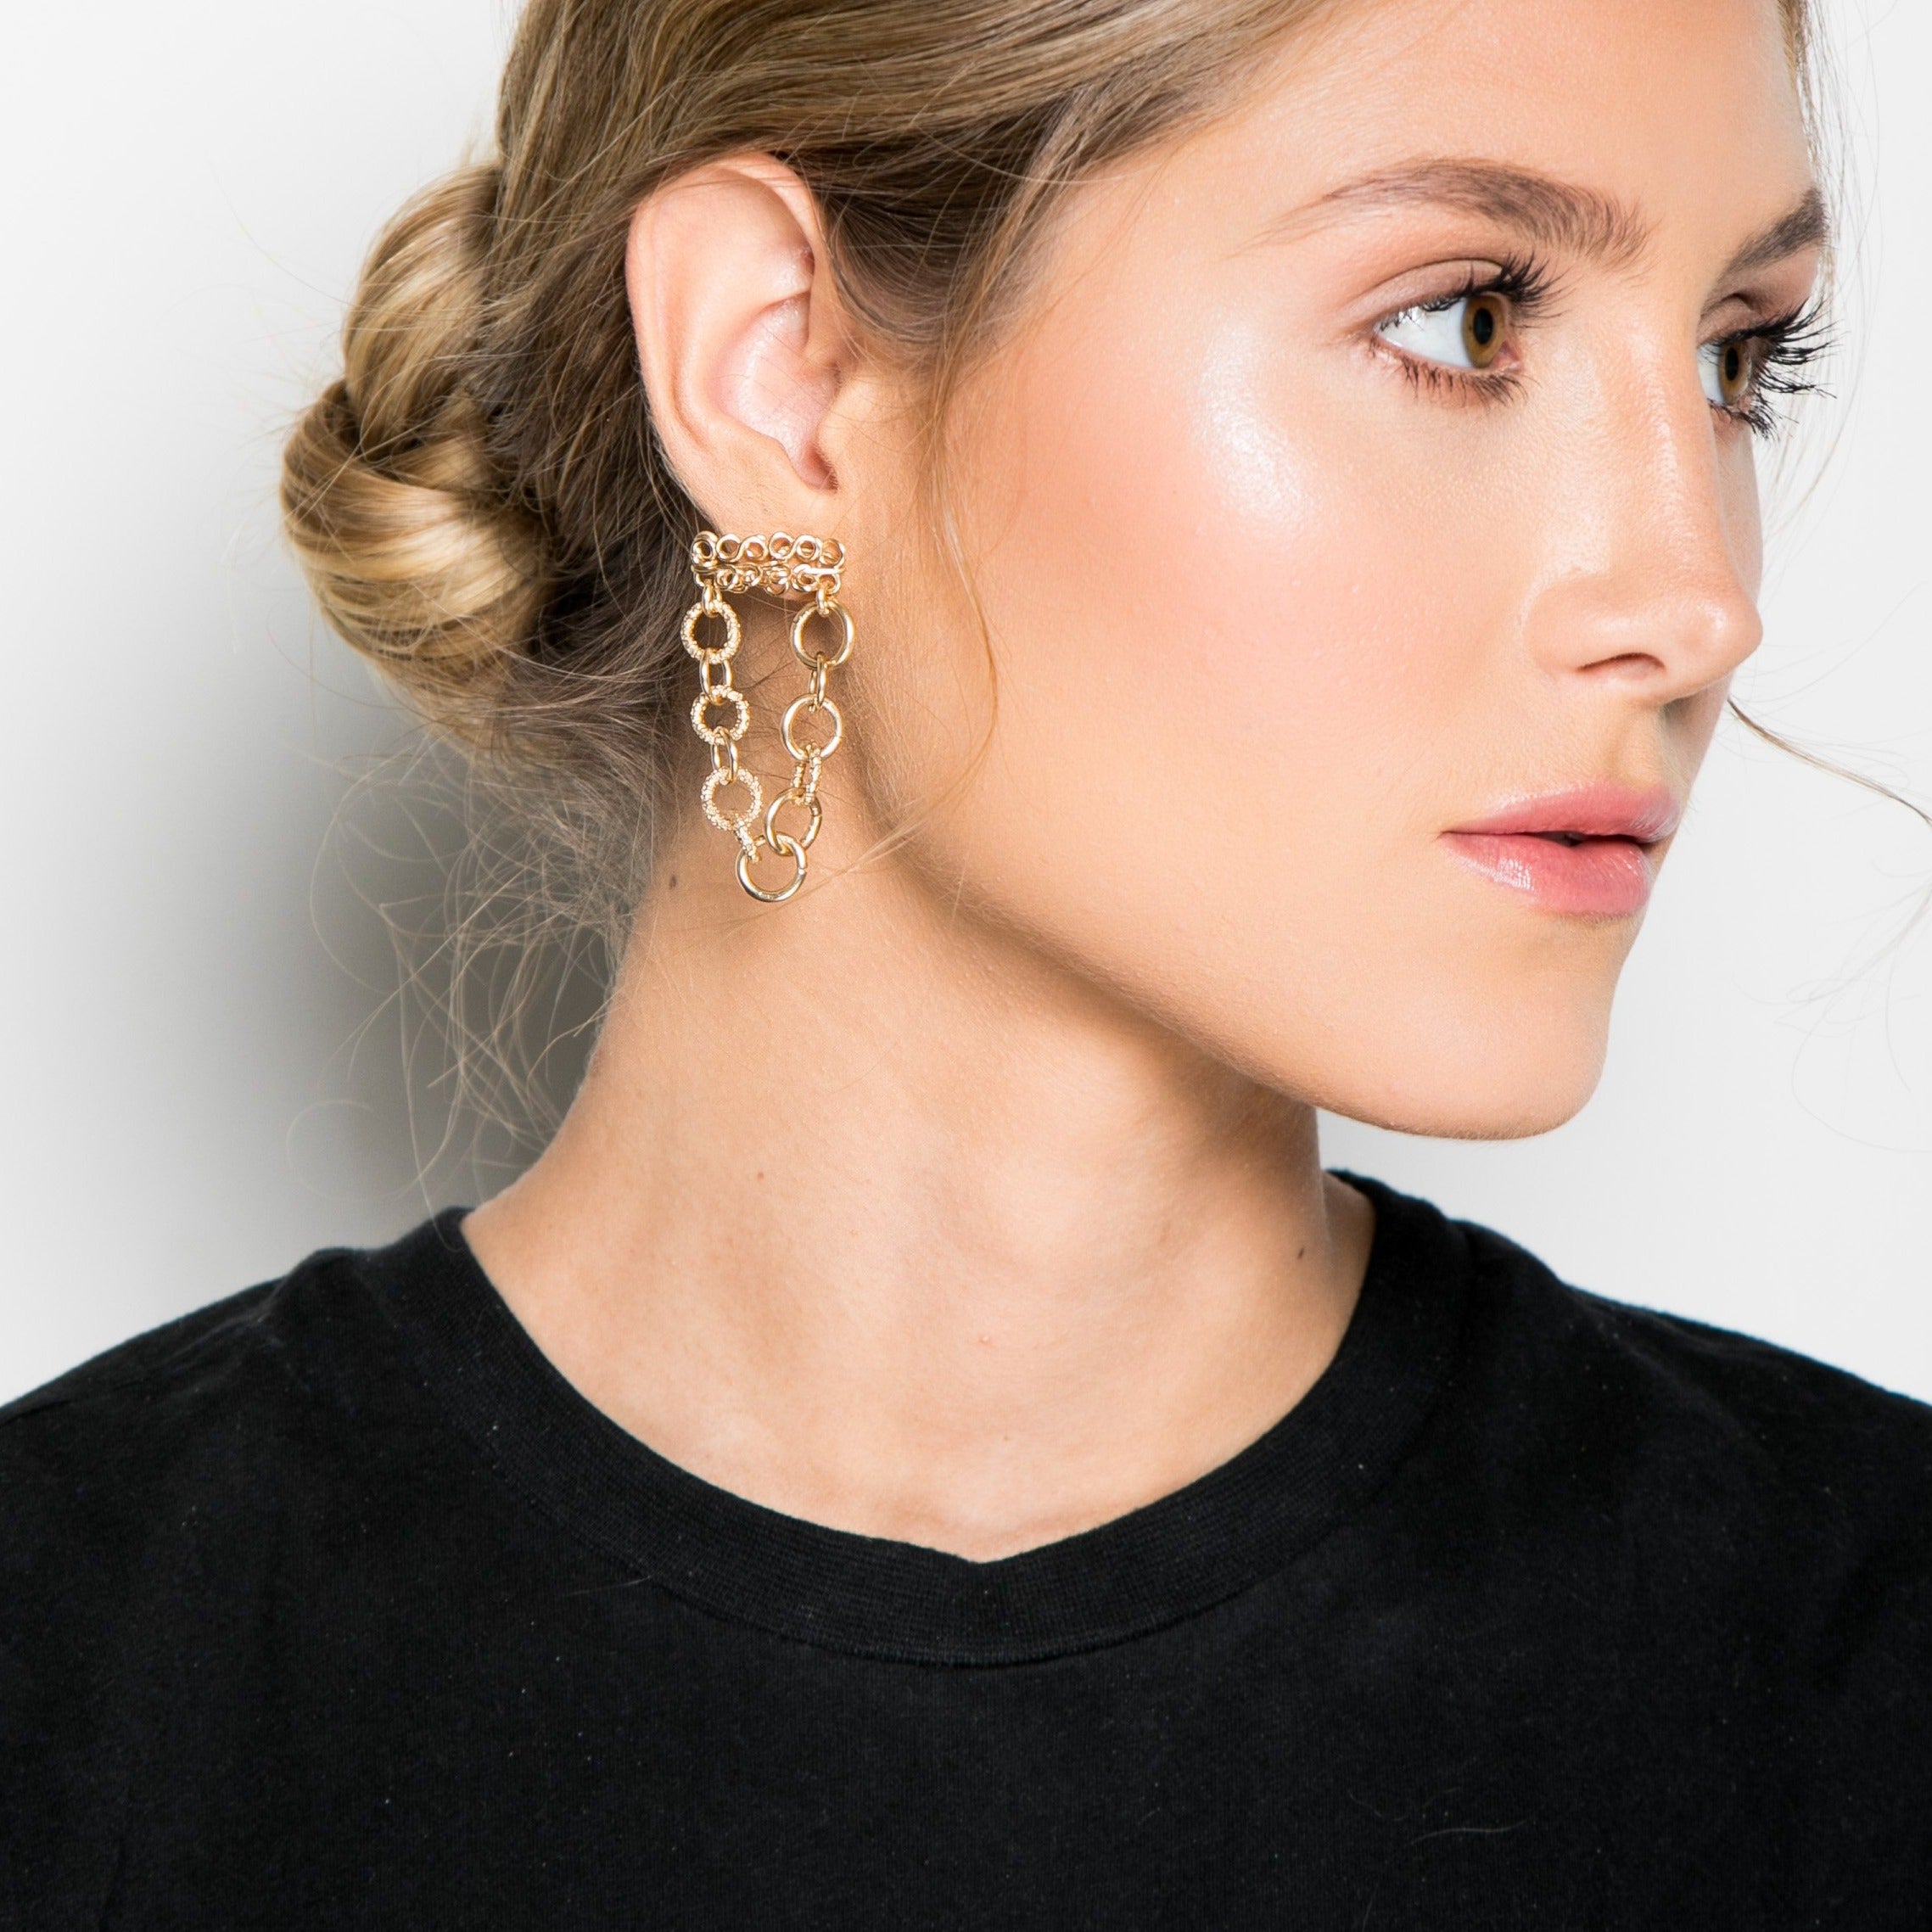 Marisma Earrings Earrings TARBAY   